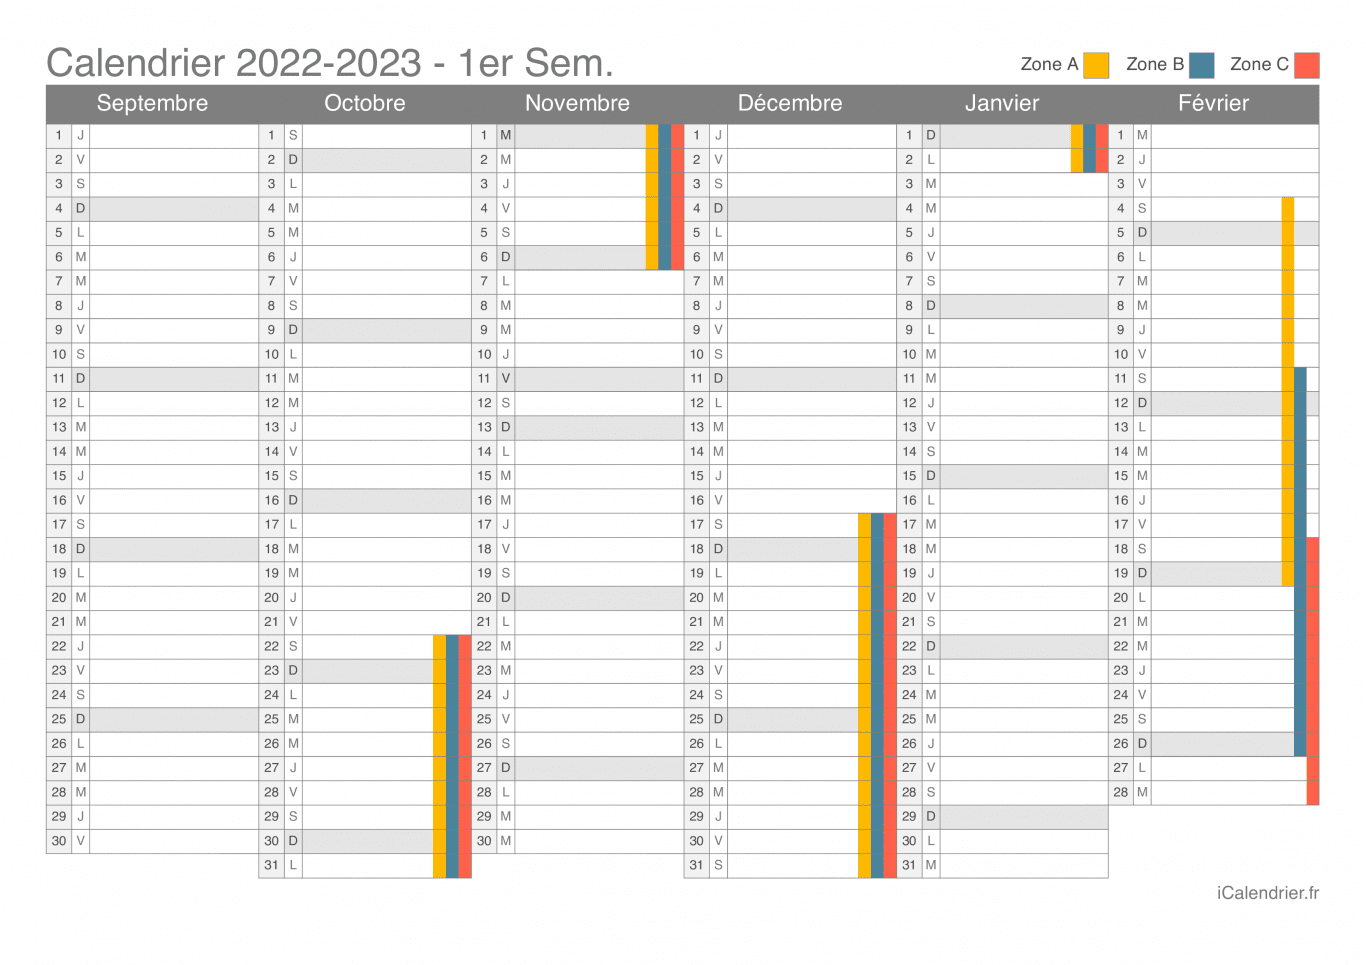 Calendrier des vacances scolaires 2022-2023 par semestre